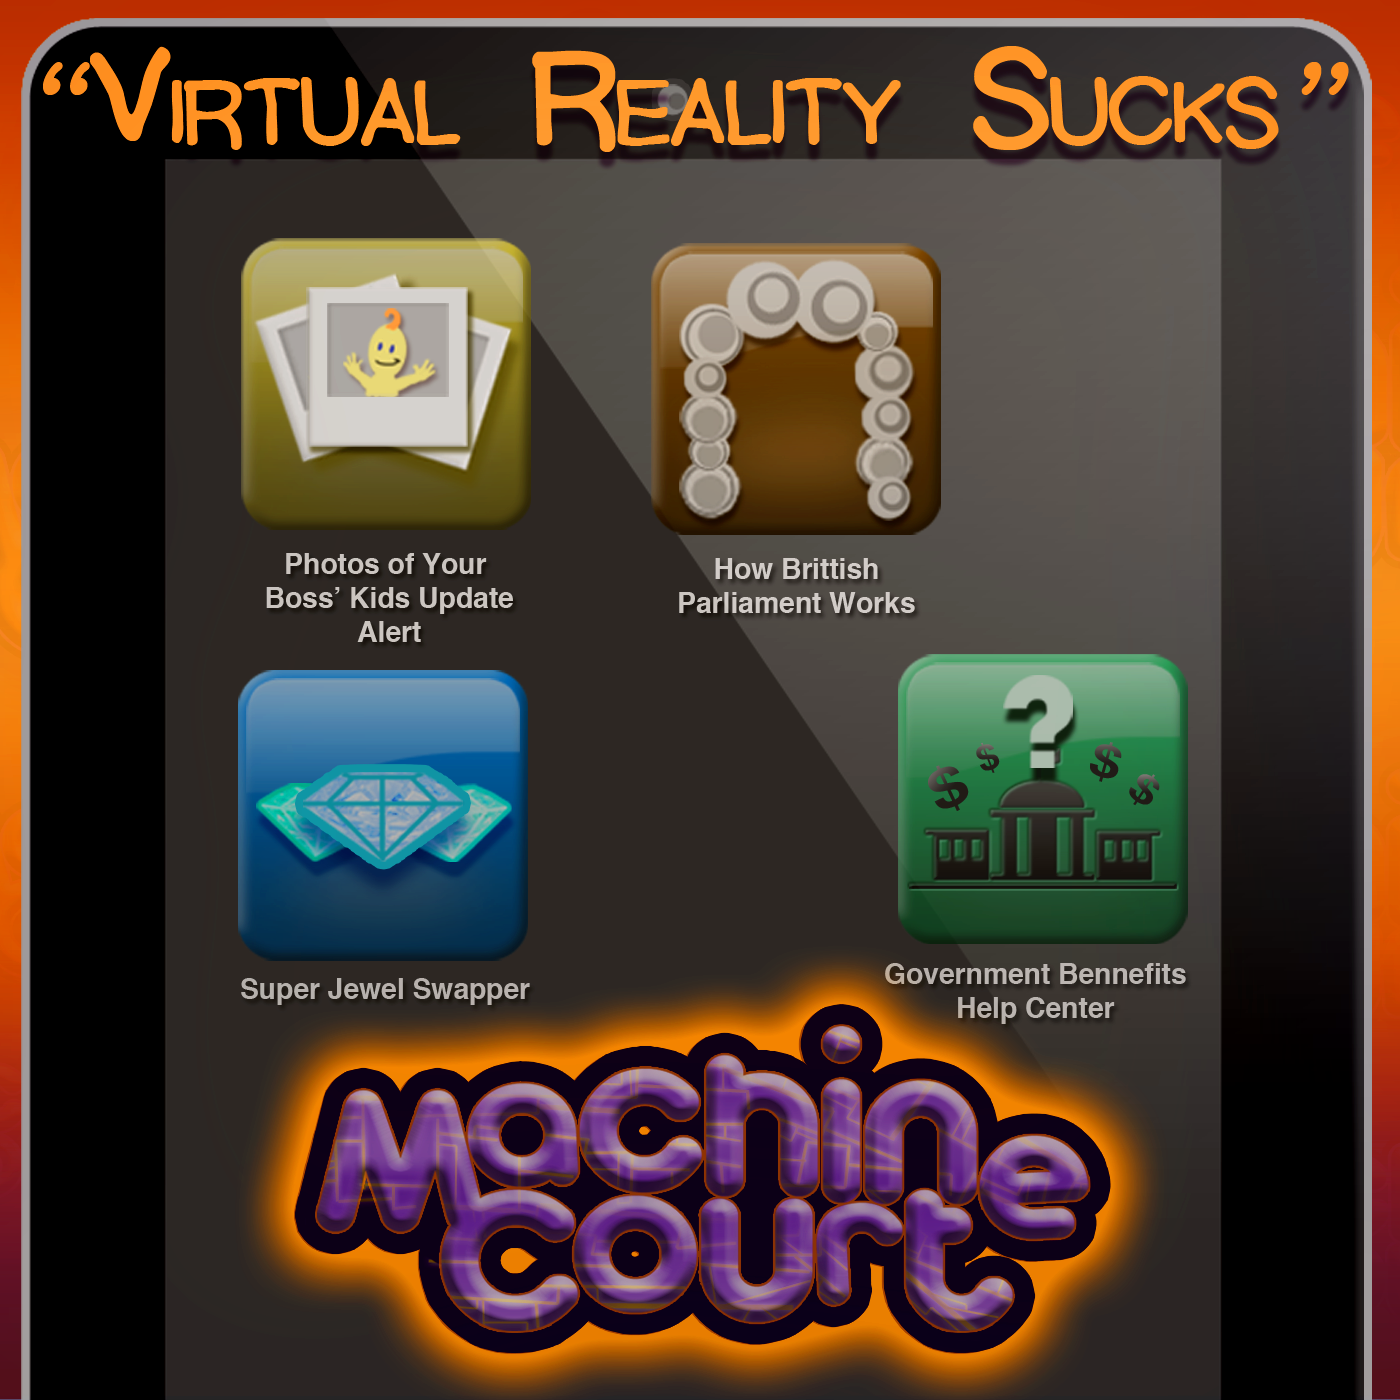 3.7 “Virtual Reality Sucks”